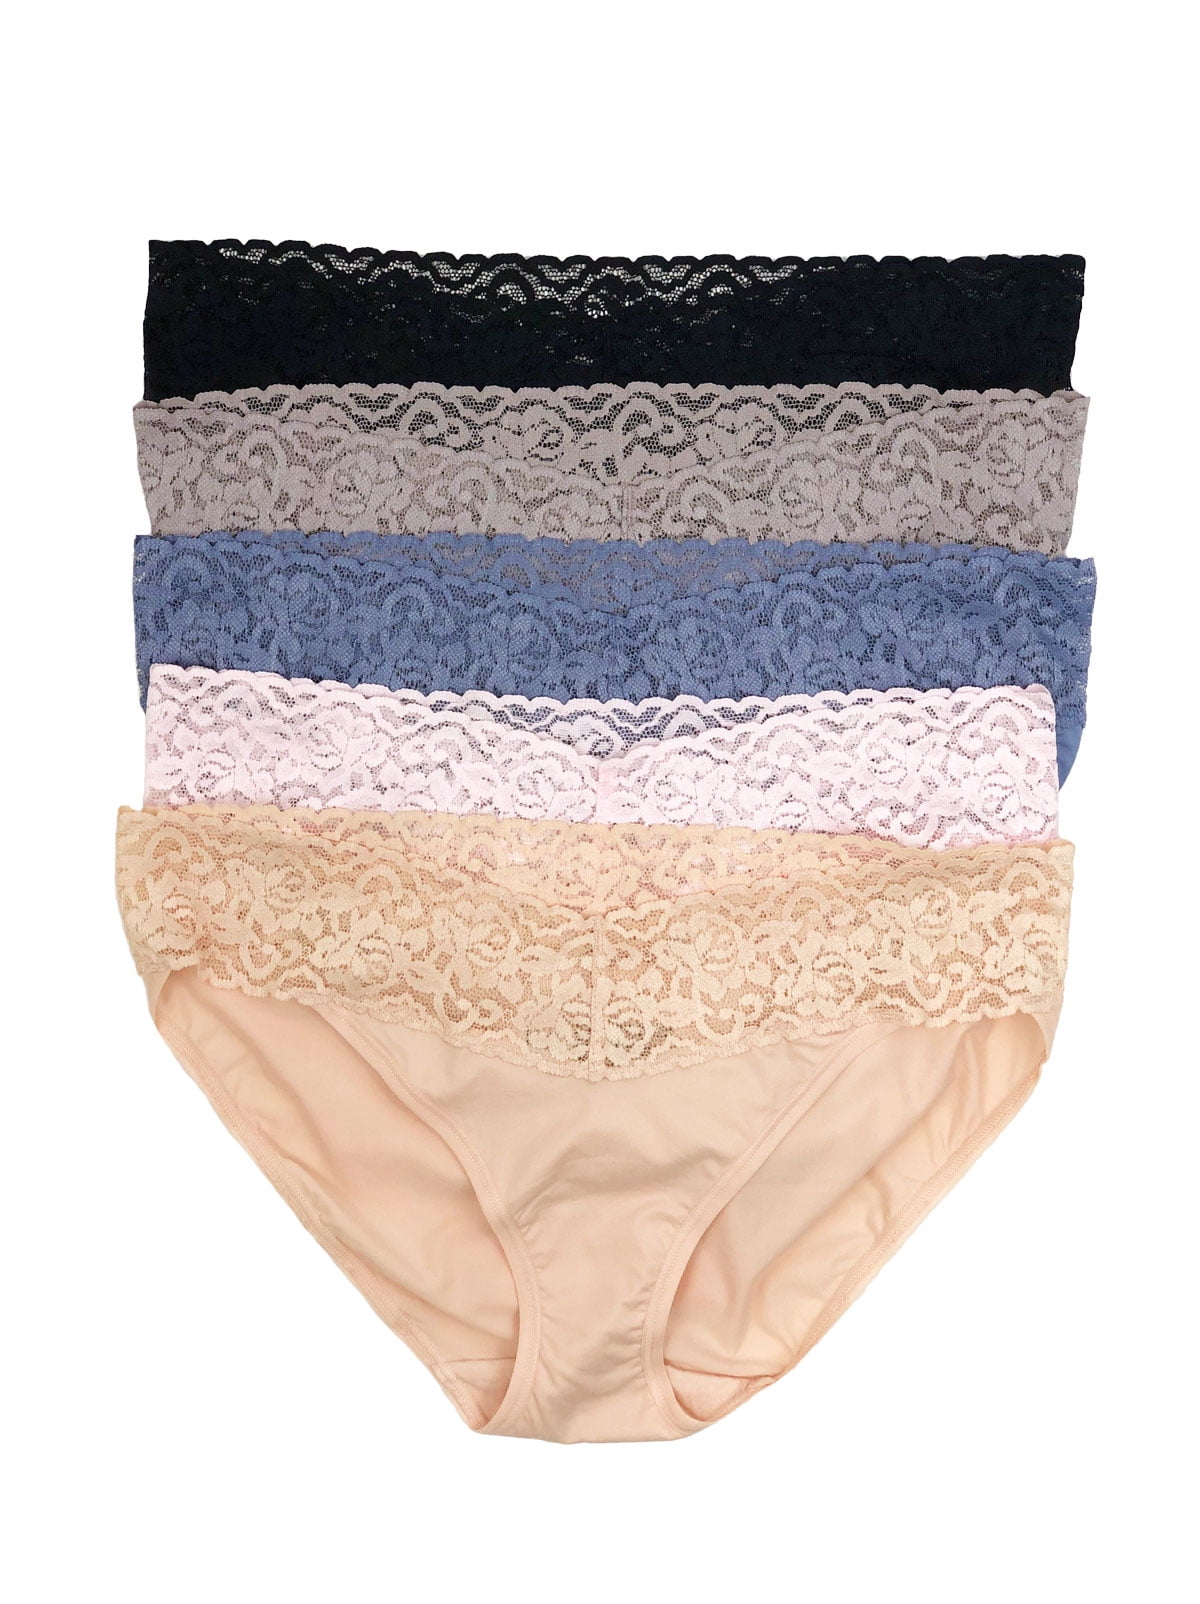 Details about   NICE 5 Women Bikini Panties Brief Floral Lace Cotton Underwear Size M L XL#F146 